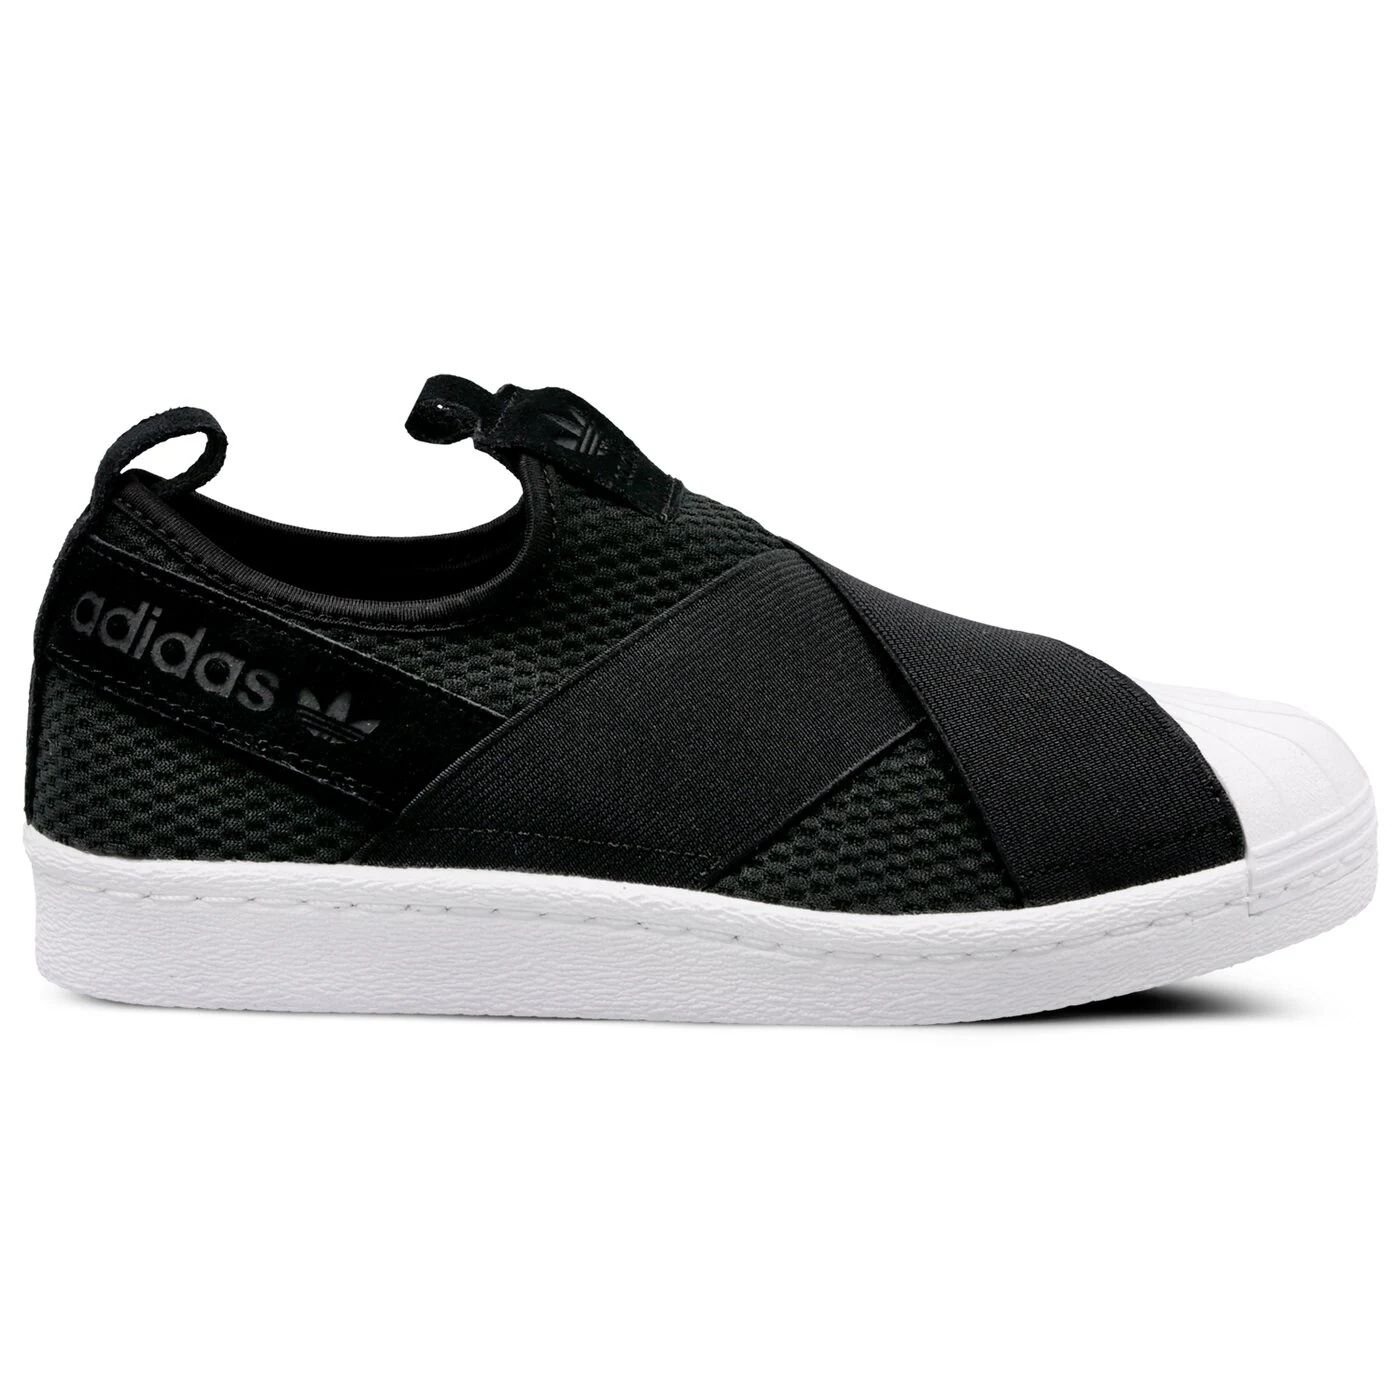 Damskie buty sportowe Adidas Superstar Slipon B37193 rozmiar 42 2/3  Częstochowa Mirów • OLX.pl